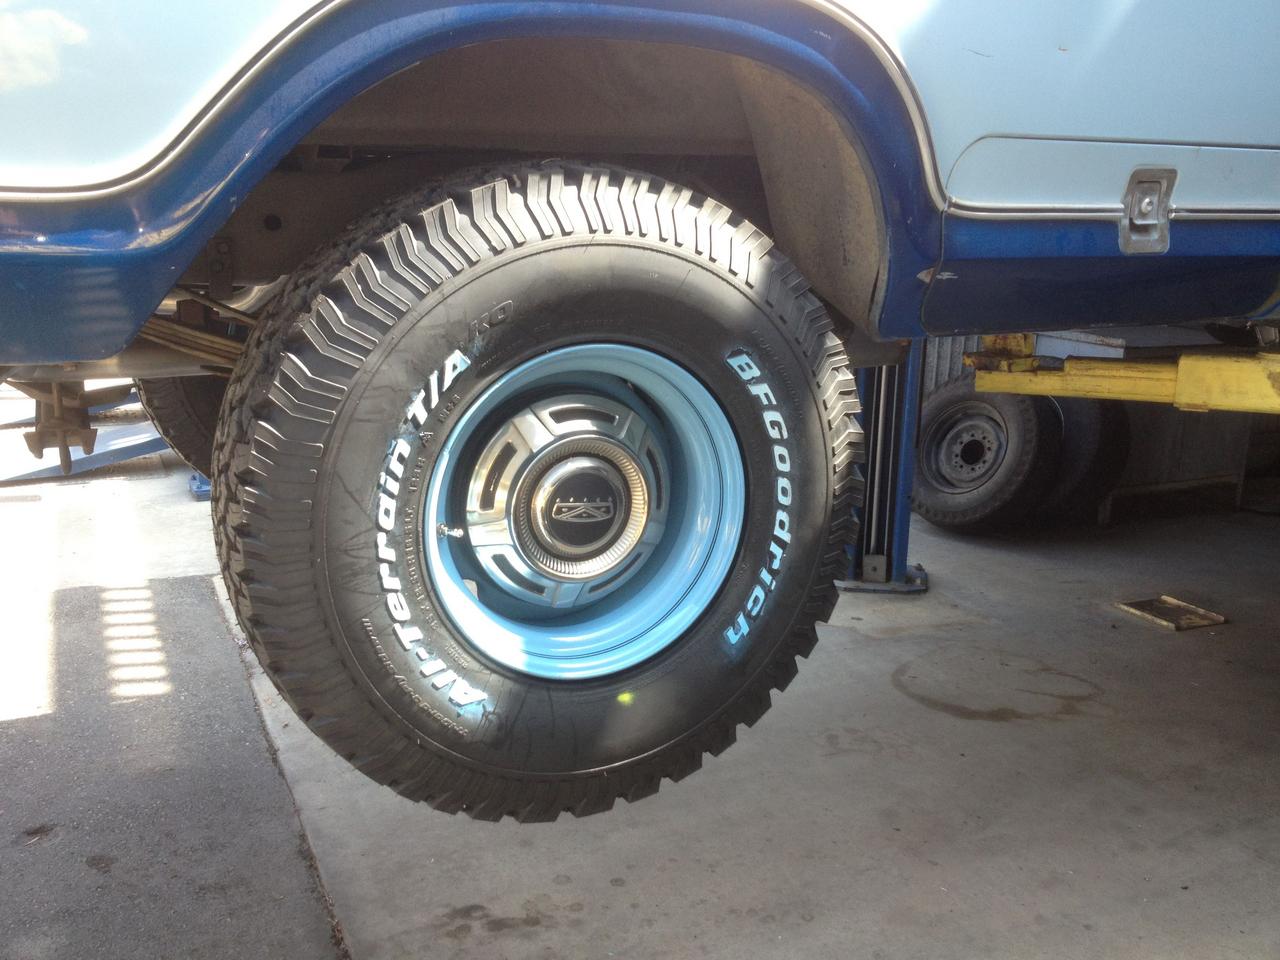 Goodyear Wrangler Radial Tire - 235/75R15 105S